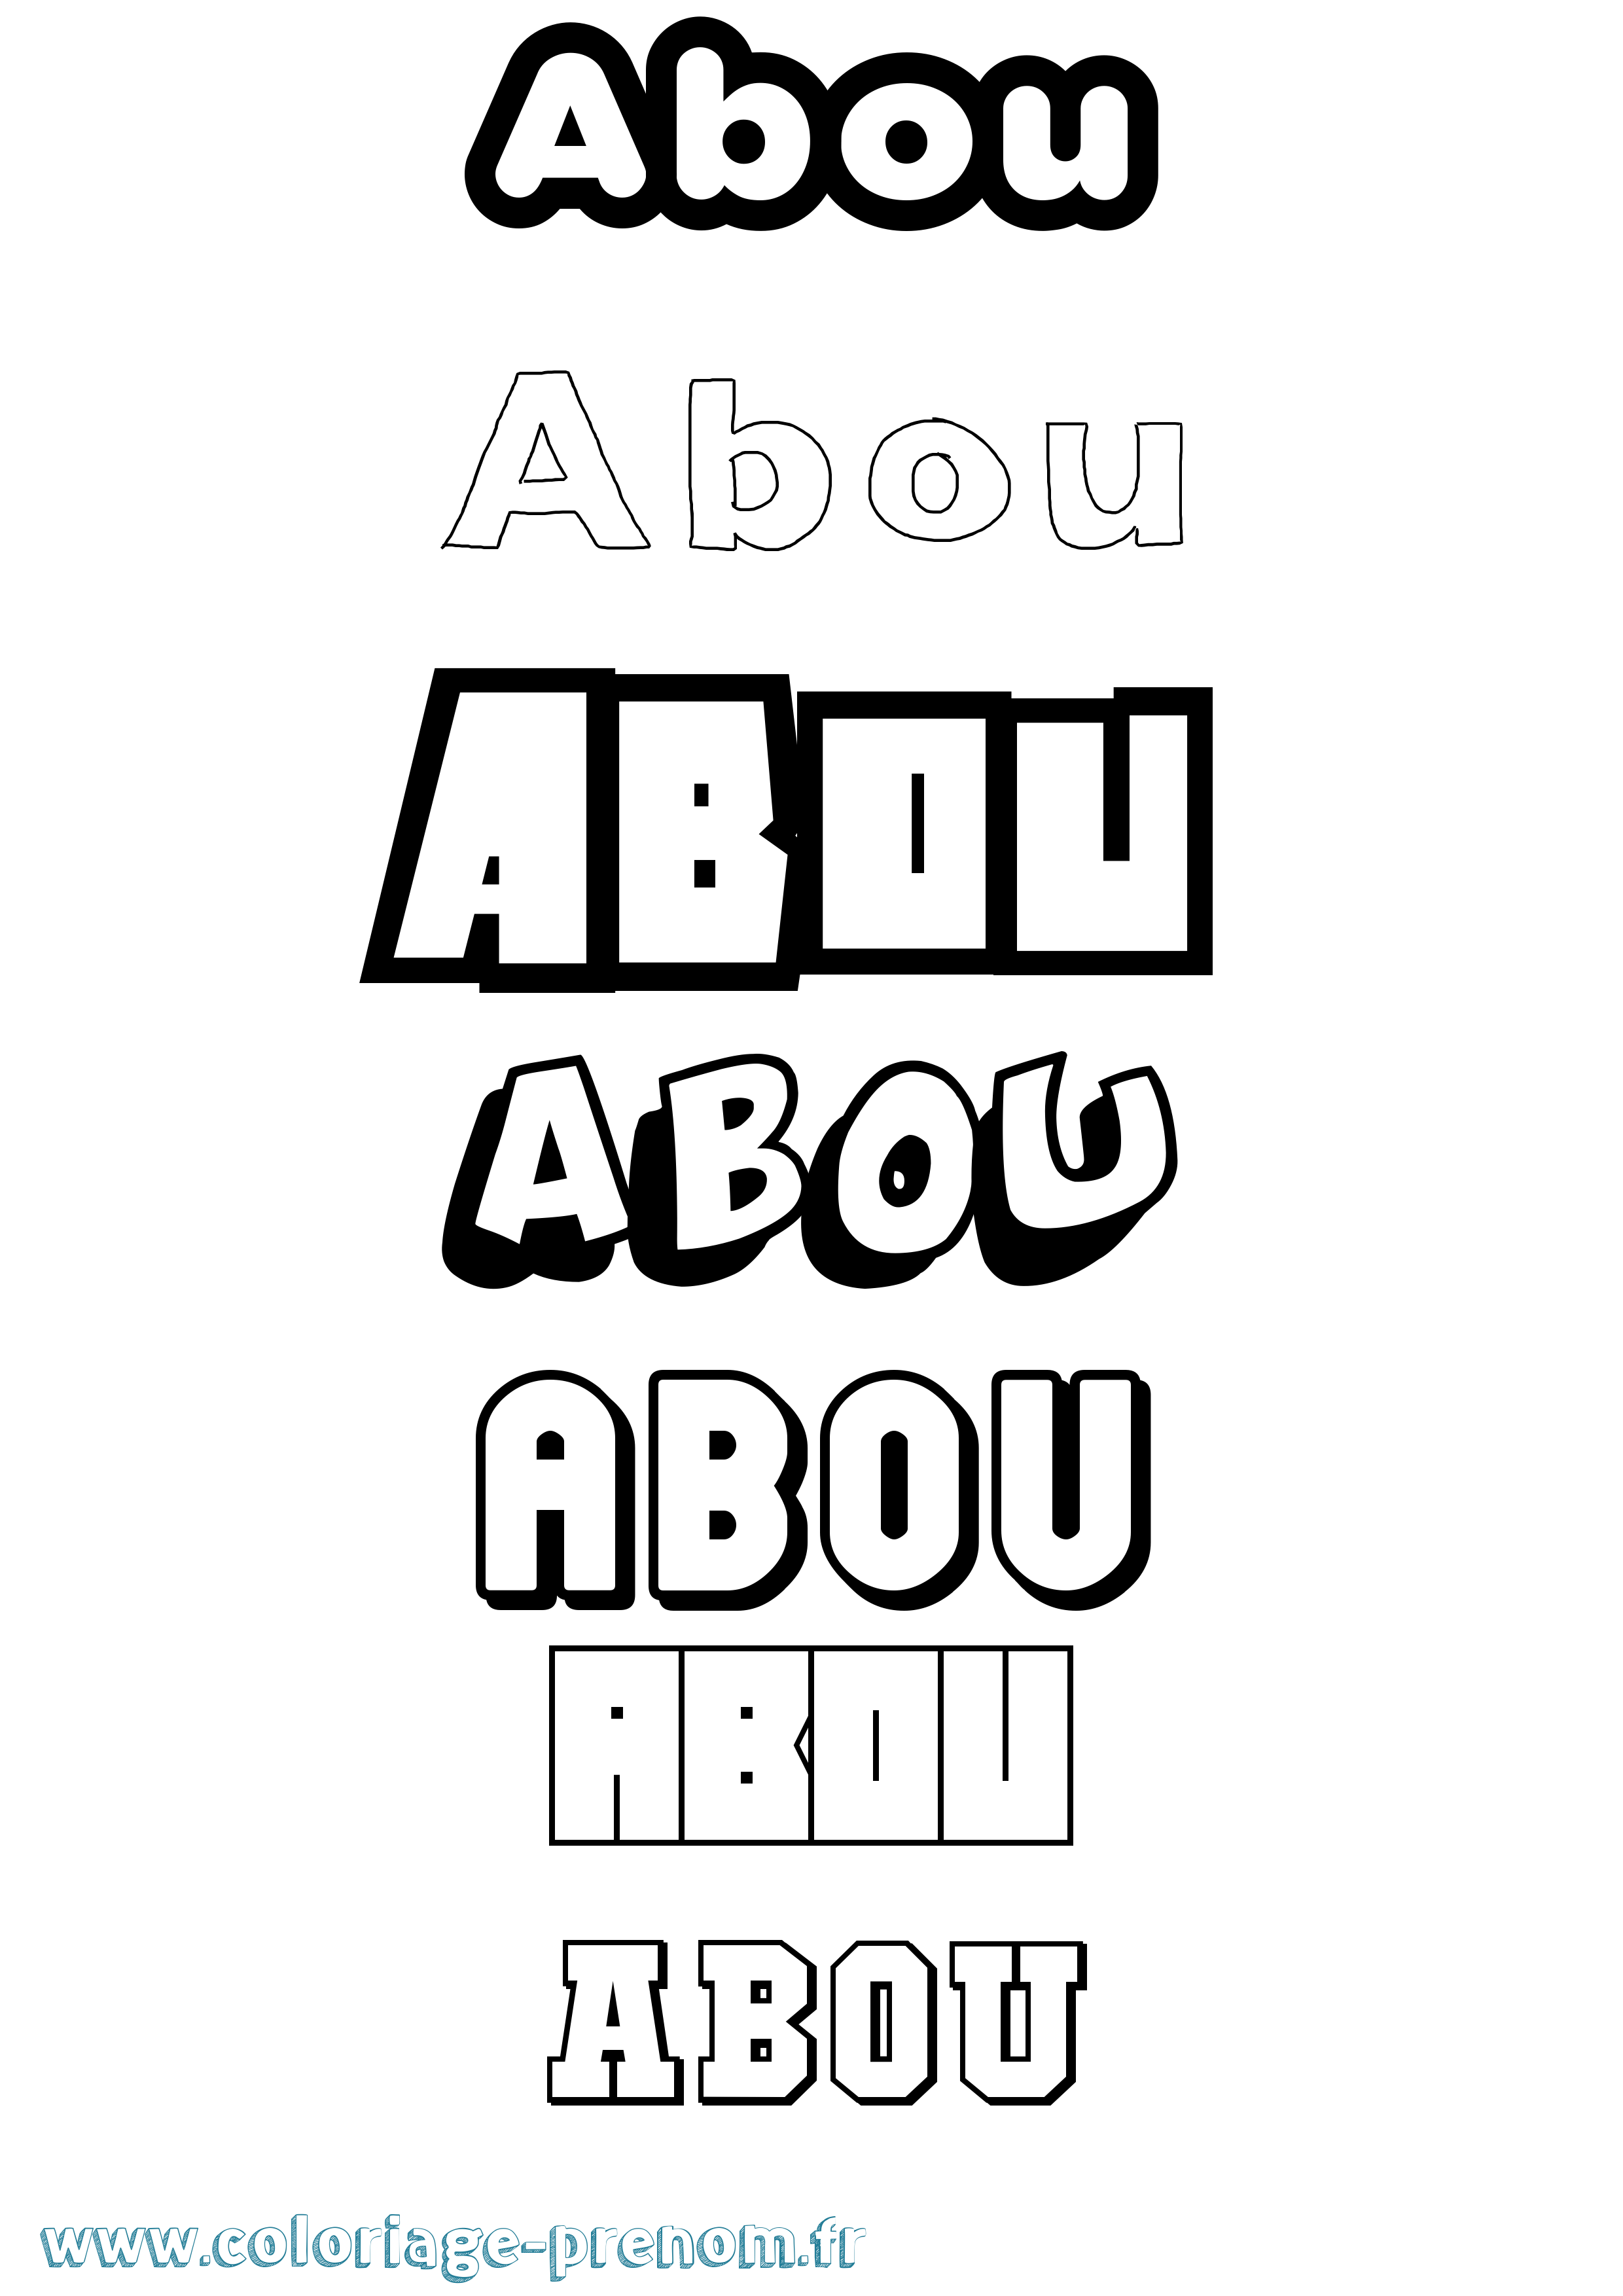 Coloriage prénom Abou Simple